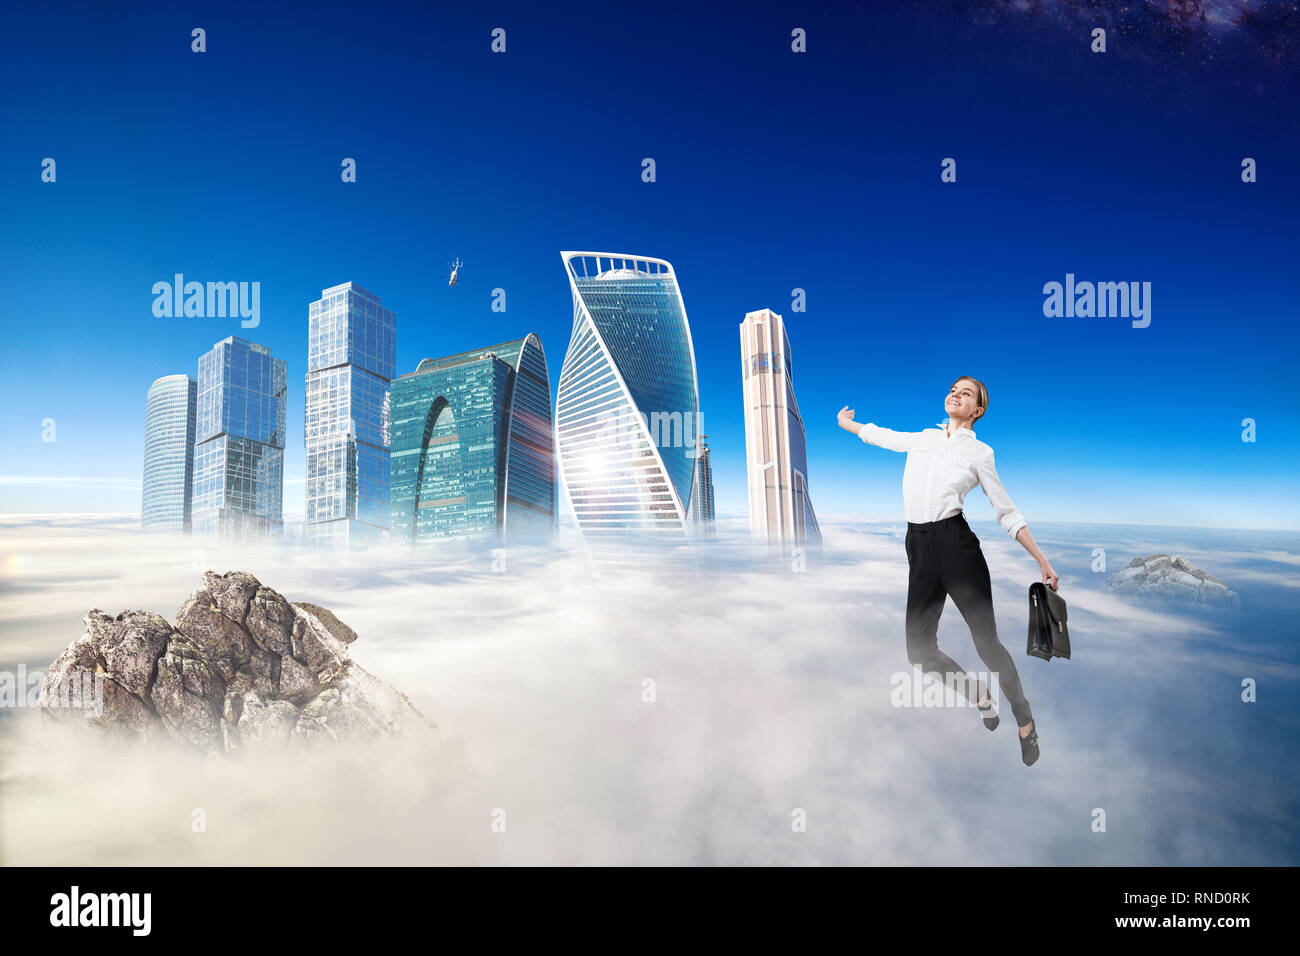 Businesswoman in formal wear flying in blue sky. Stock Photo